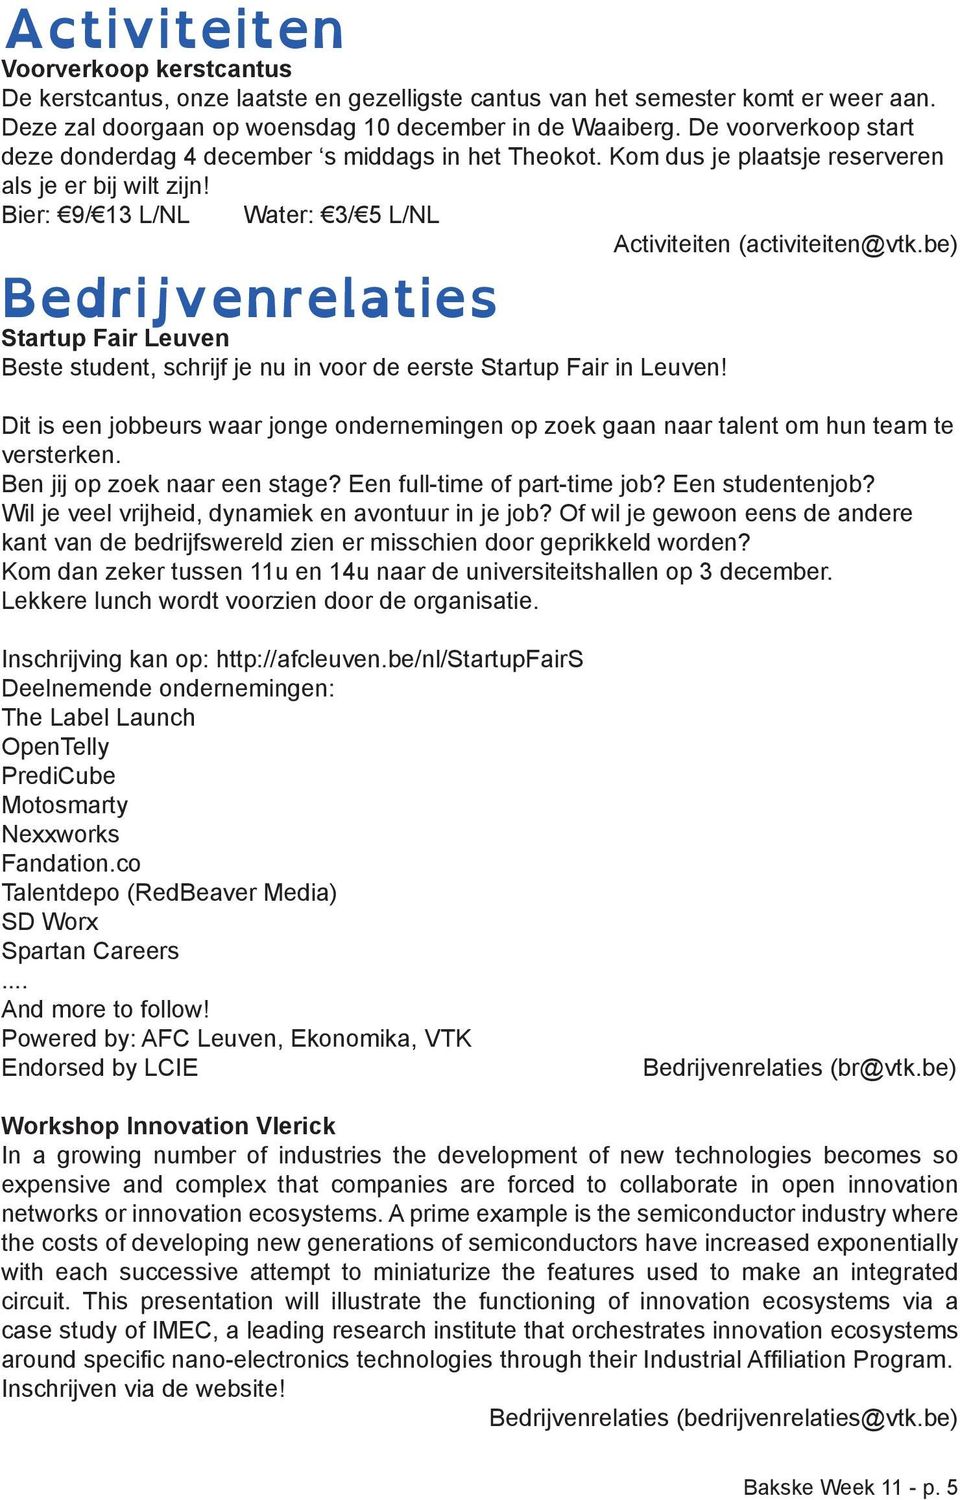 Bier: 9/ 13 L/NL Water: 3/ 5 L/NL Bedrijvenrelaties Startup Fair Leuven Beste student, schrijf je nu in voor de eerste Startup Fair in Leuven! Activiteiten (activiteiten@vtk.